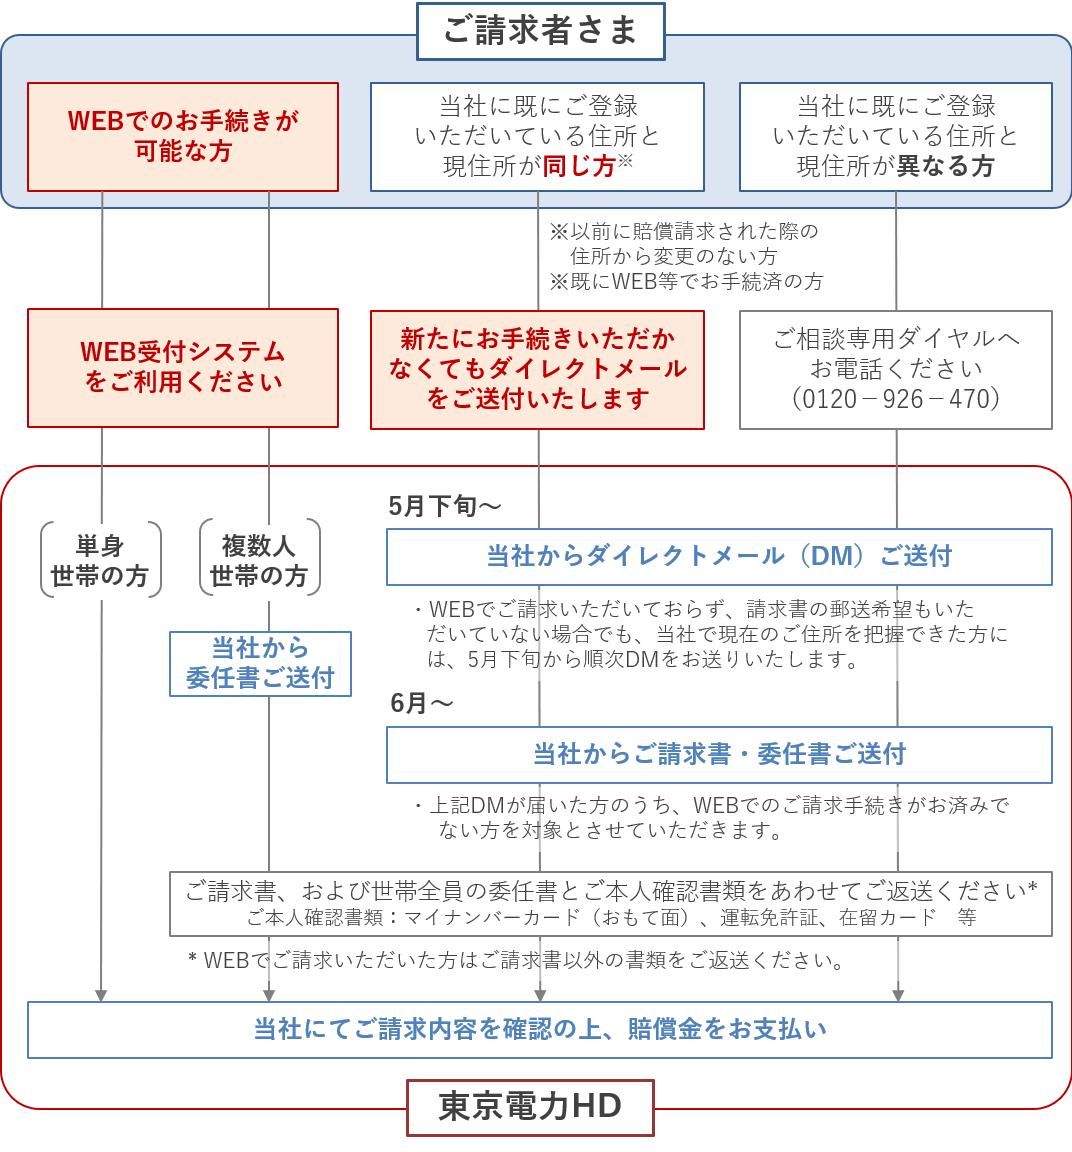 東京電力WEBサイトに掲載されている請求手続きの画像